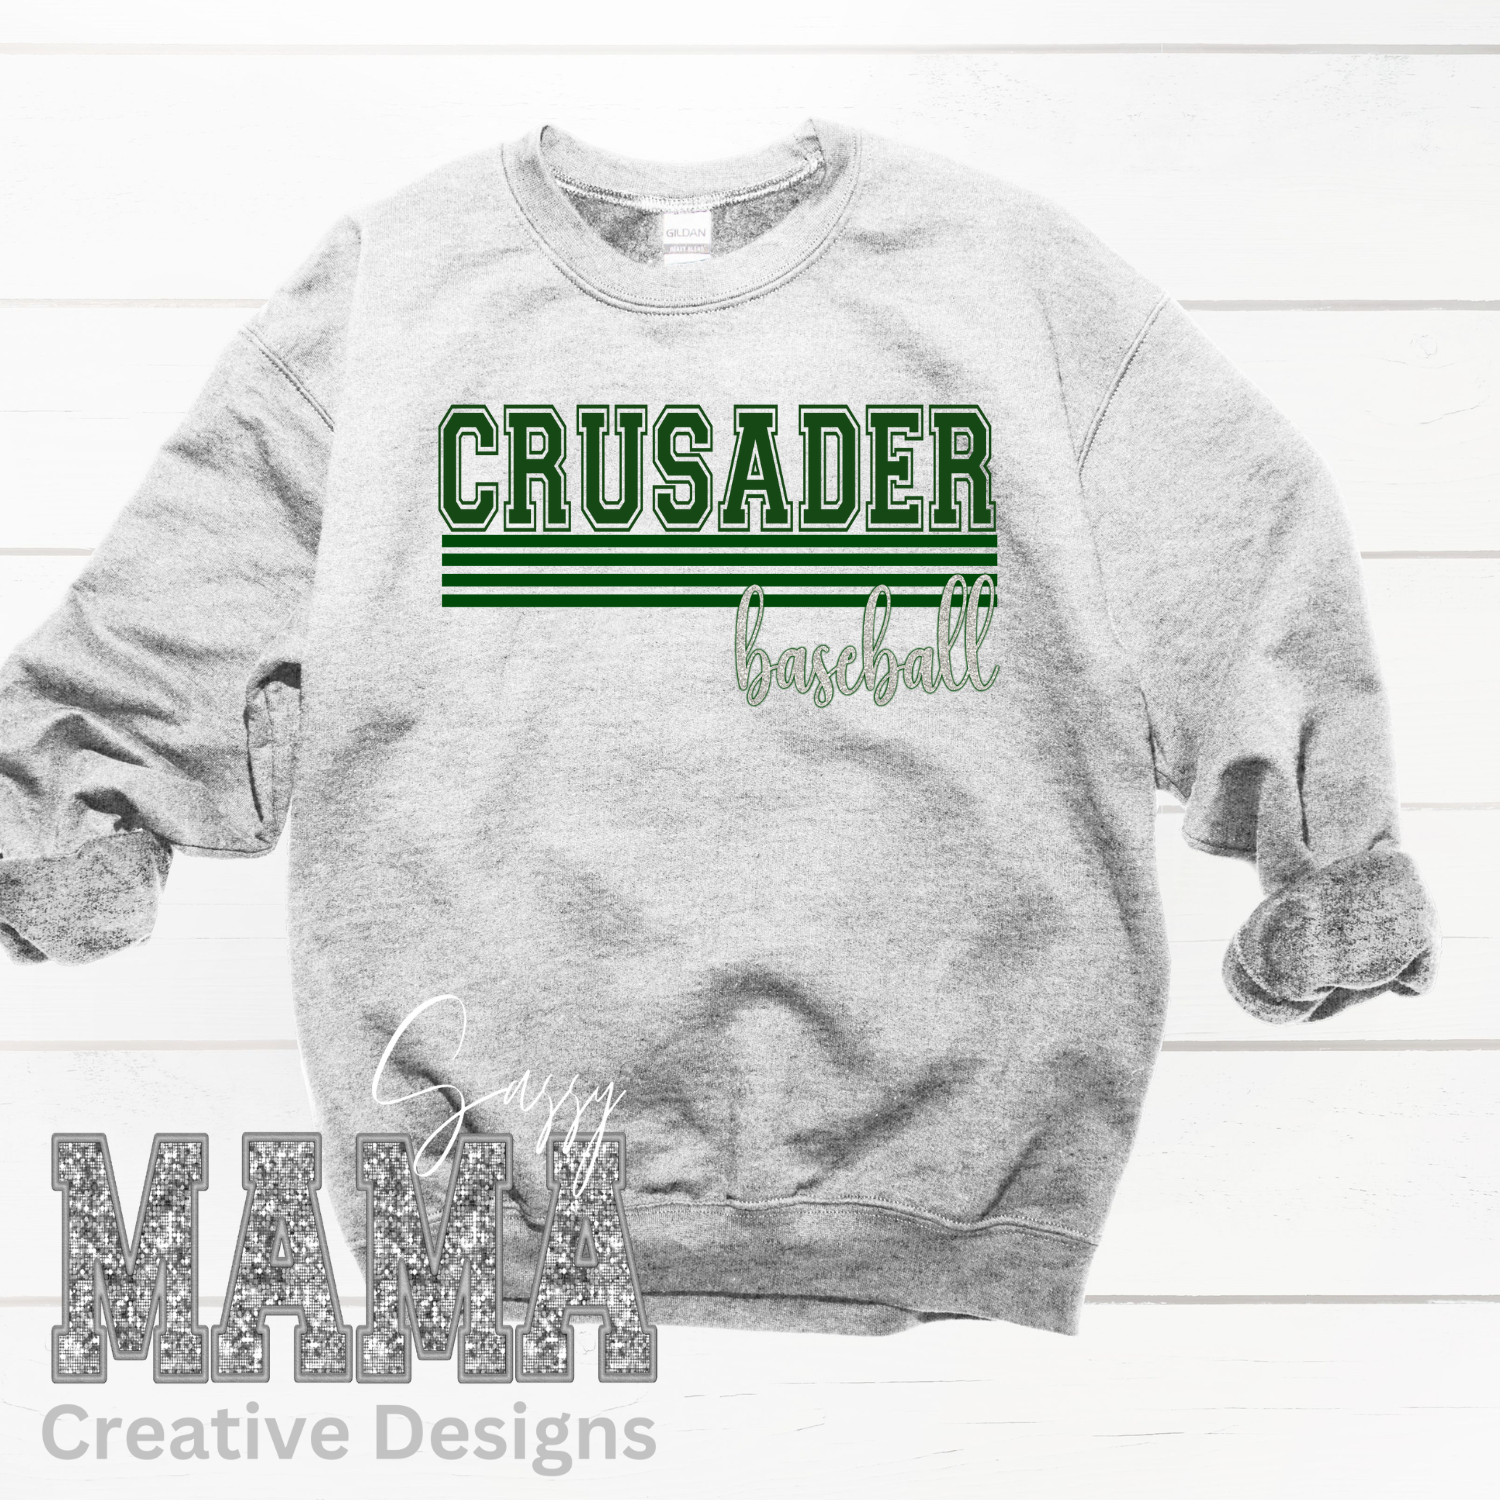 Central Catholic Crusader Baseball Shirt Adult and Youth